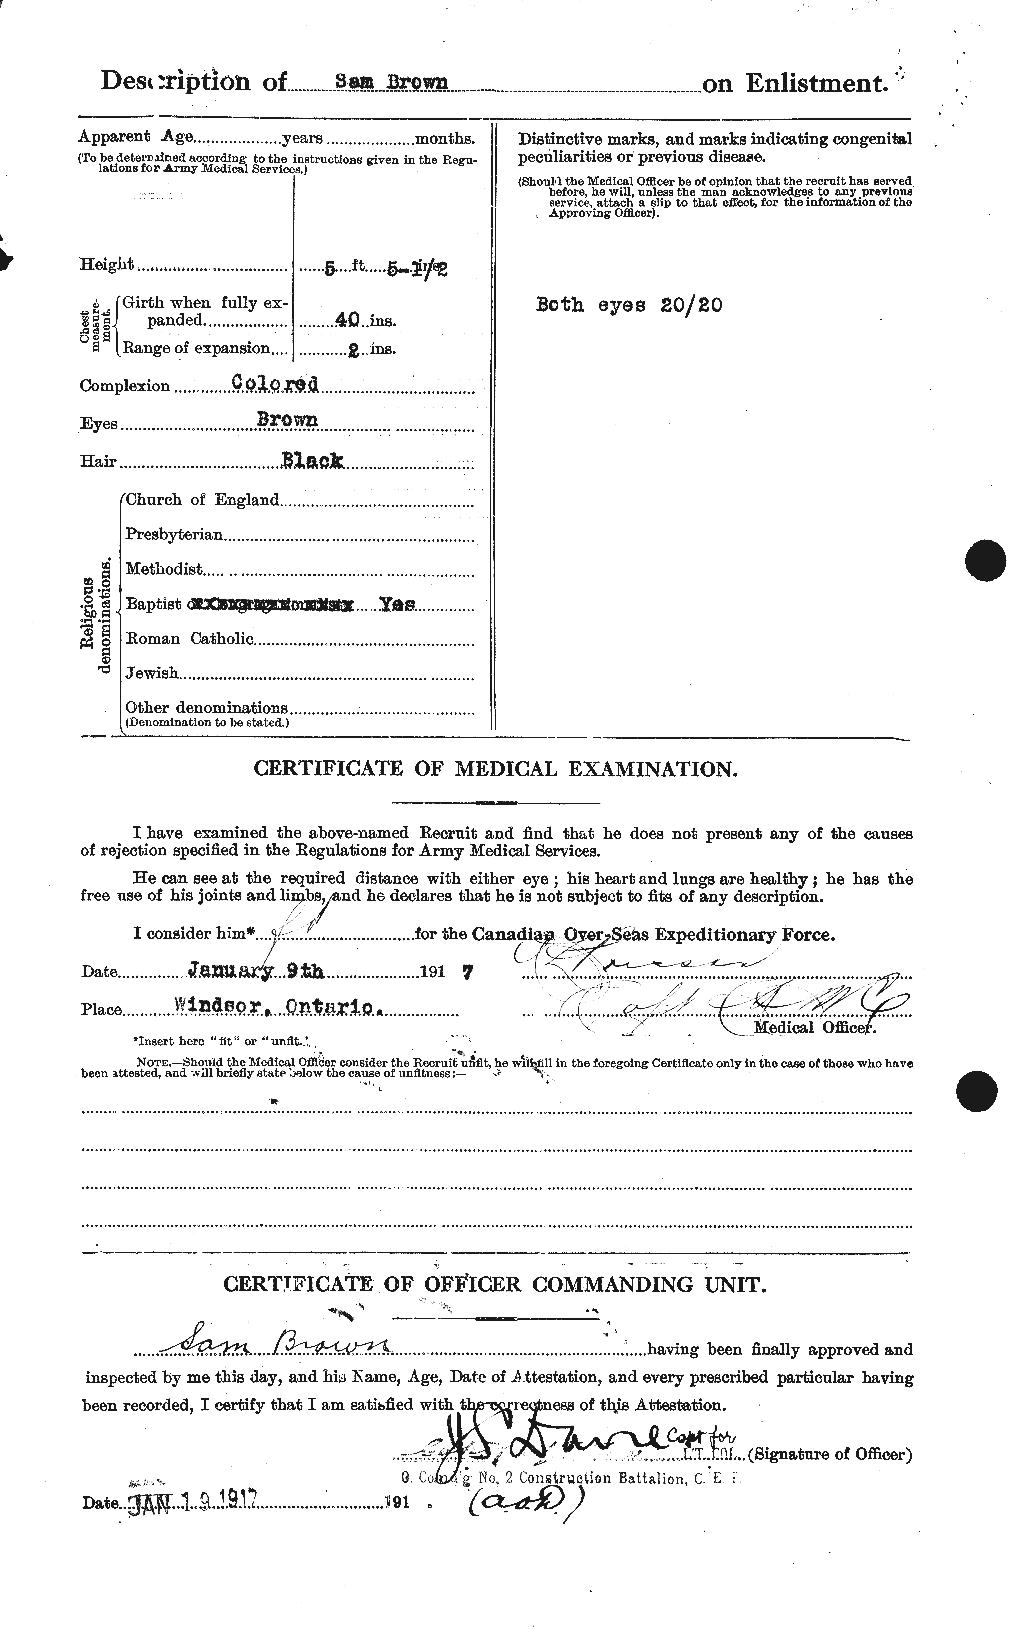 Dossiers du Personnel de la Première Guerre mondiale - CEC 265333b